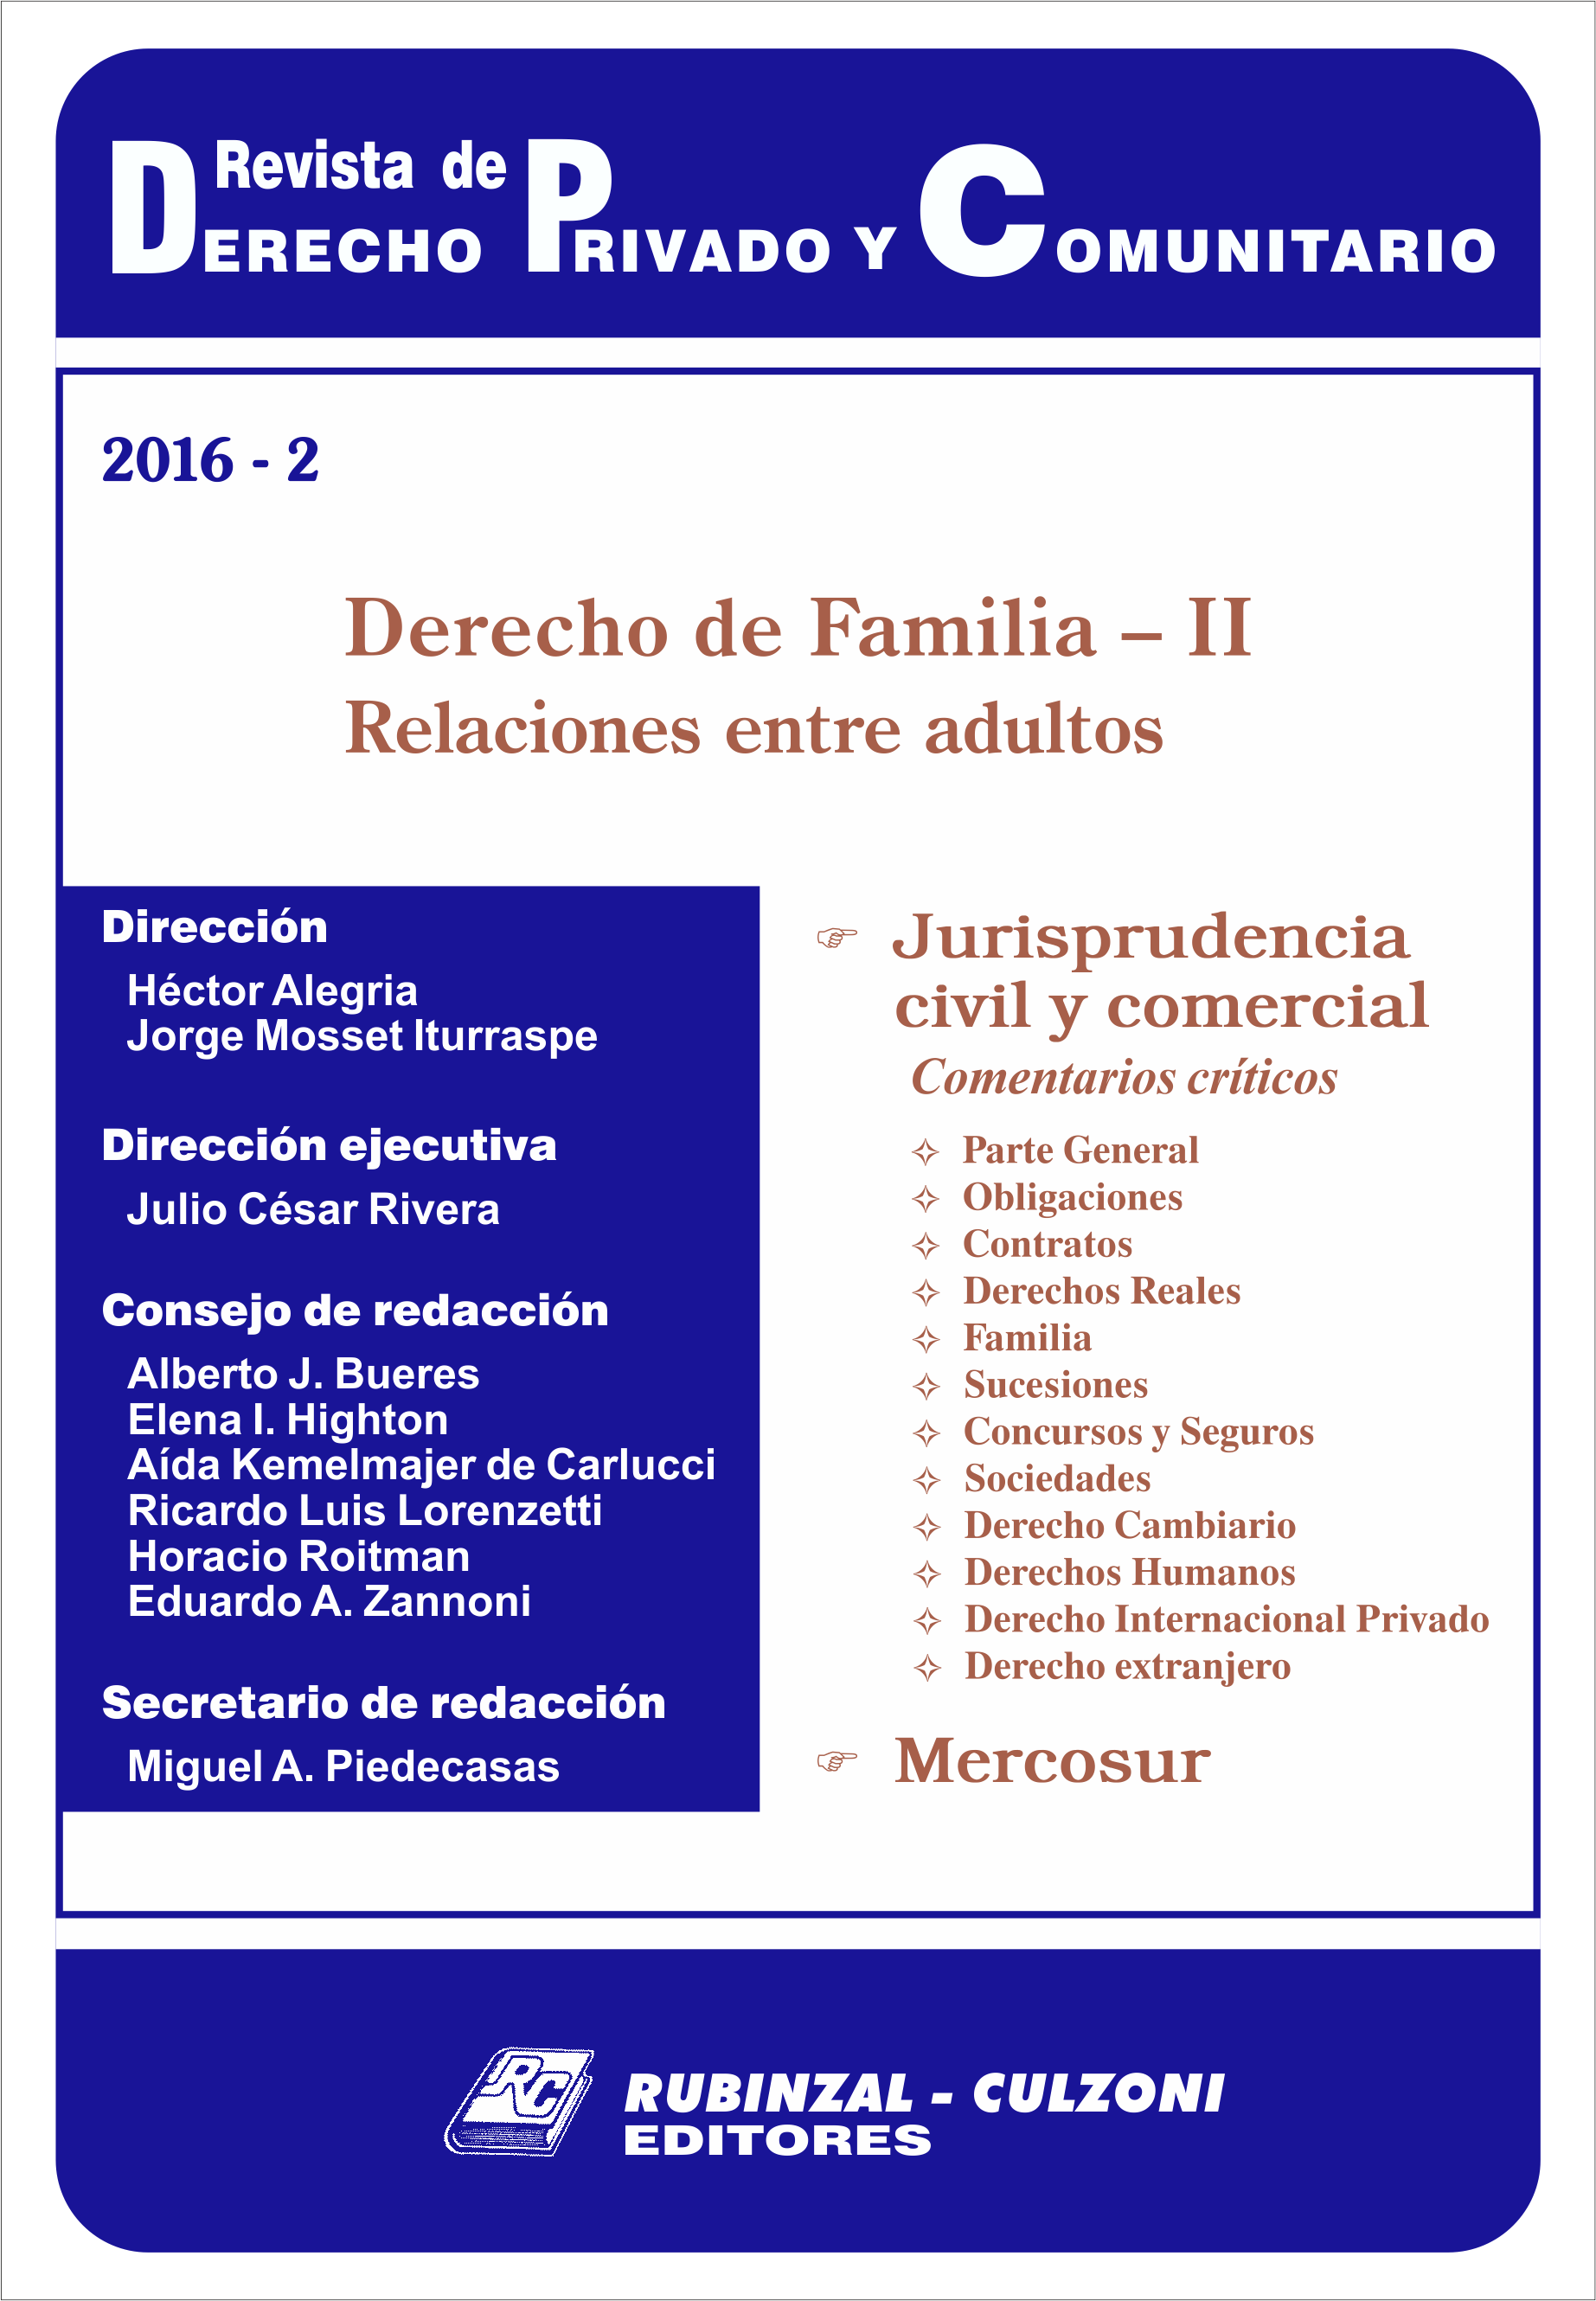 Revista de Derecho Privado y Comunitario - Derecho de Familia - II